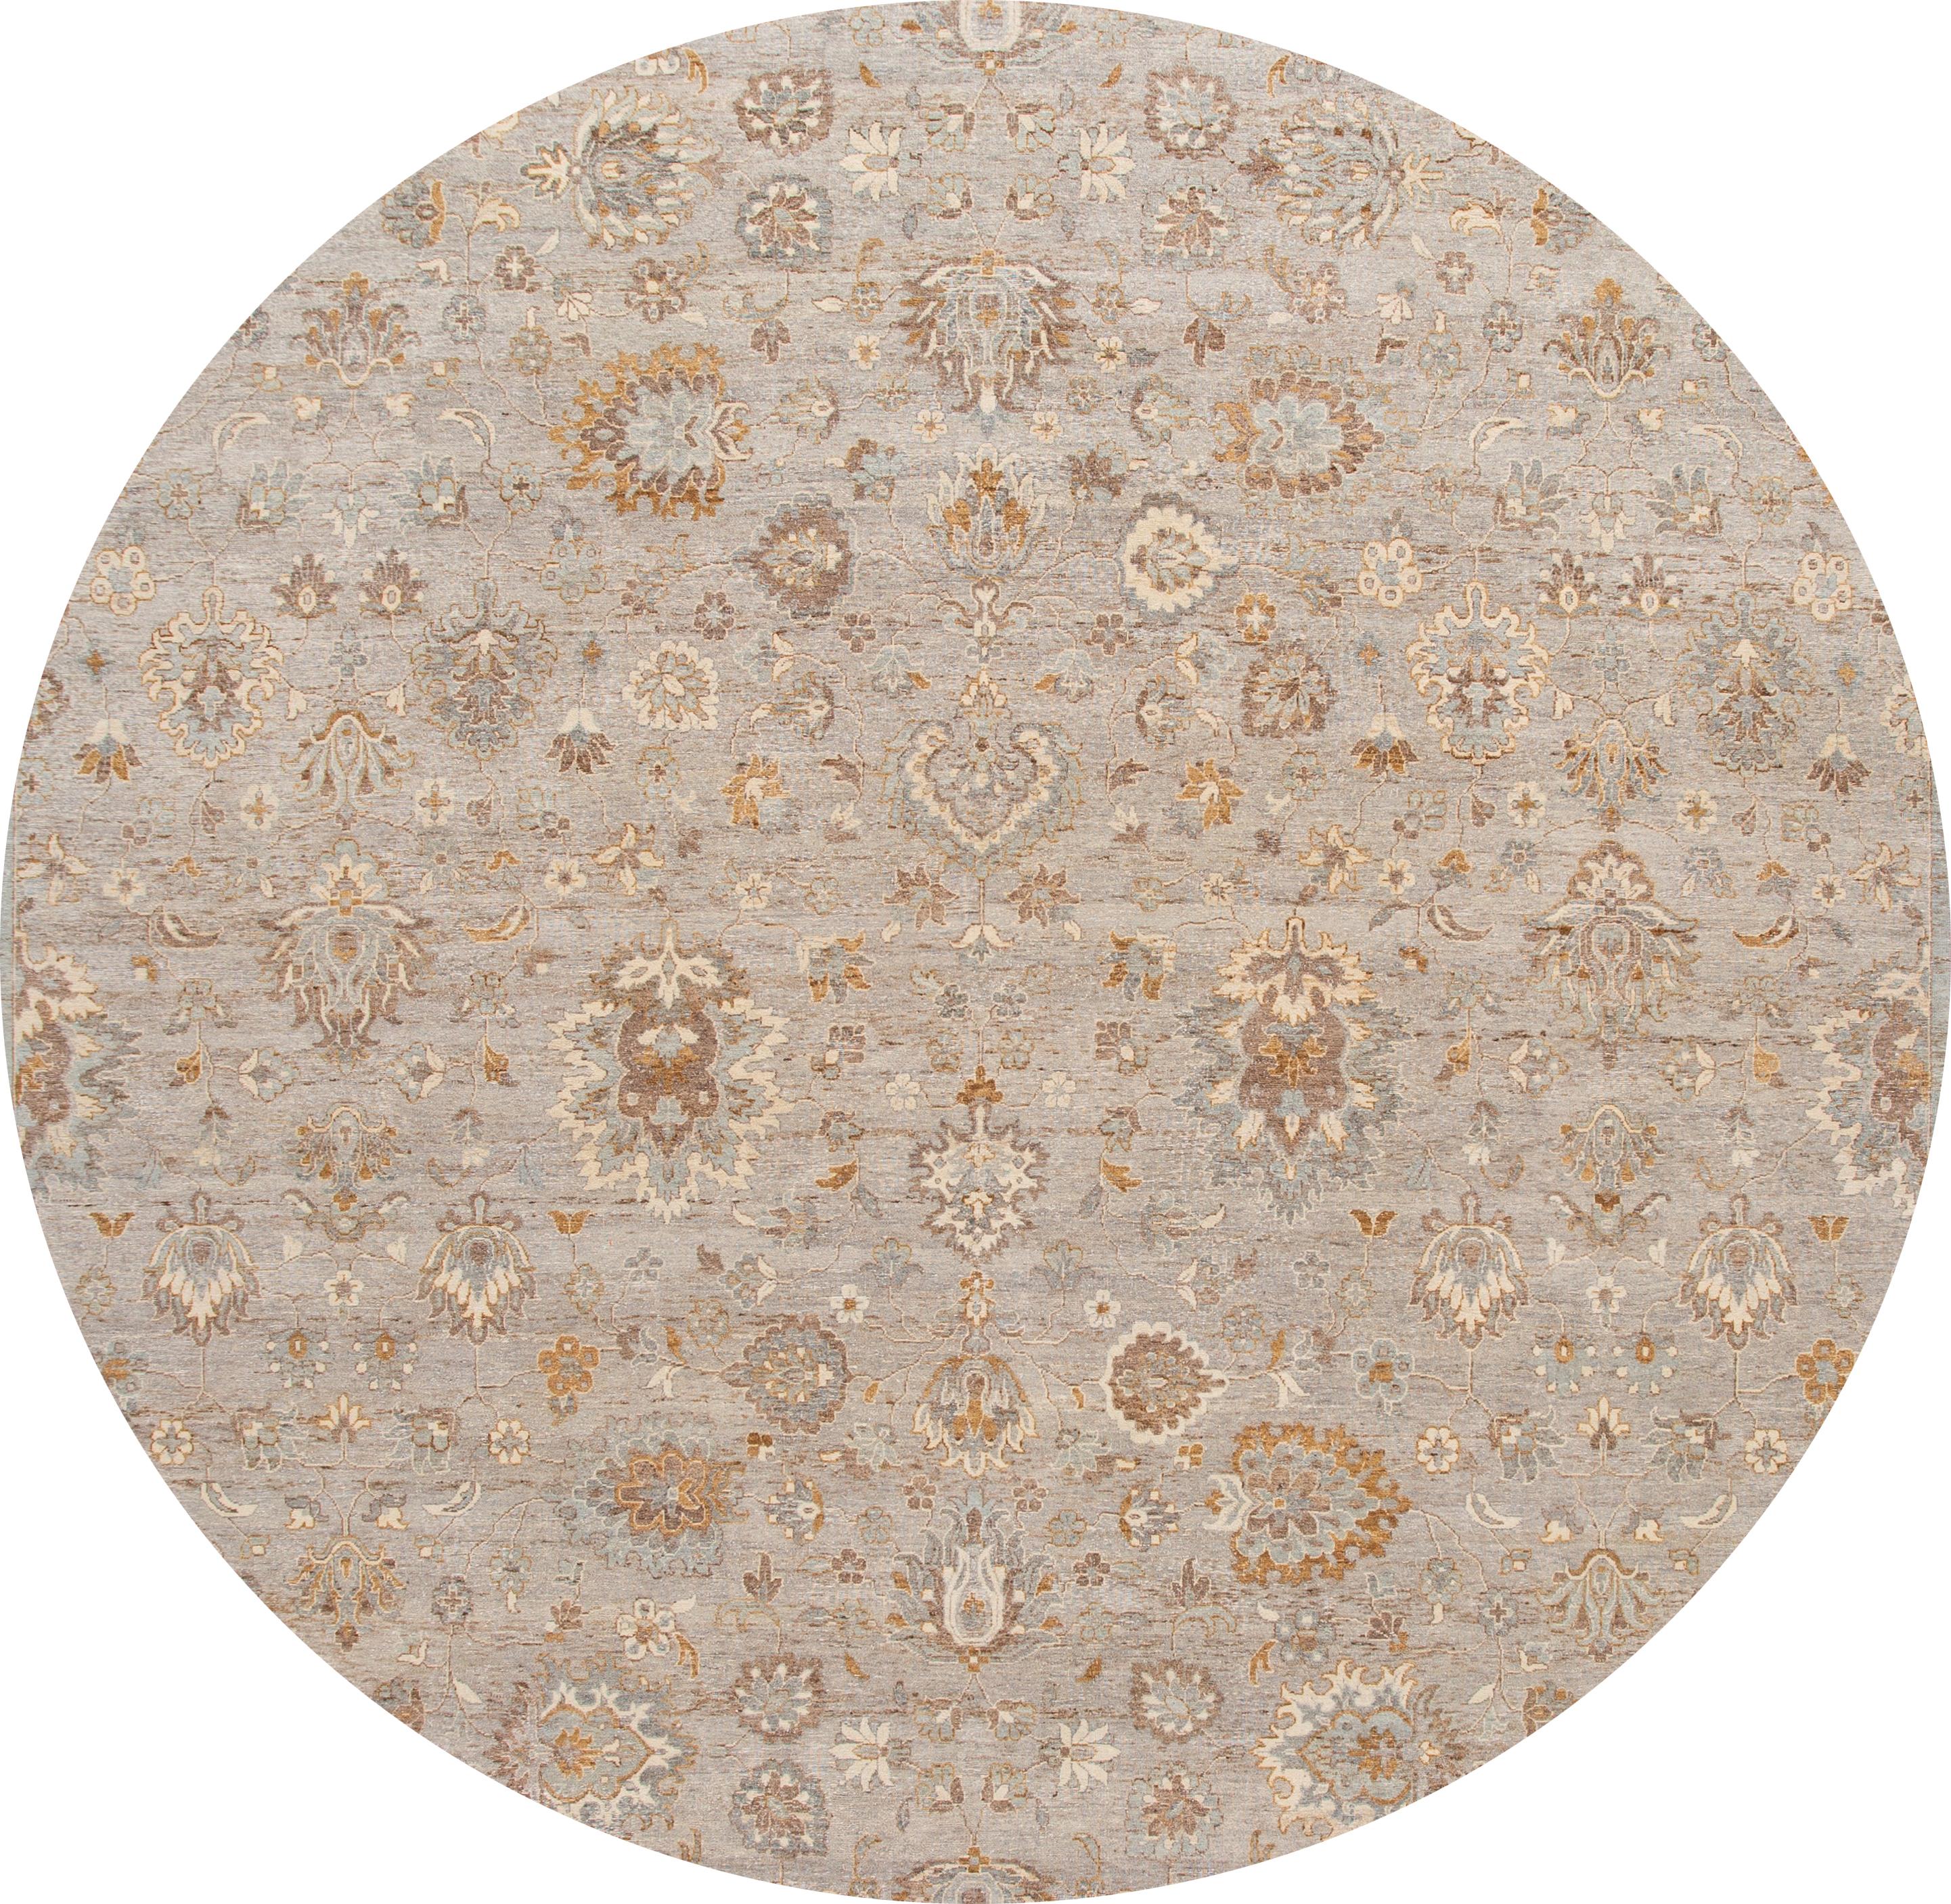 Schöner handgeknüpfter moderner indischer Wollteppich. Dieser Teppich hat ein graues Feld mit hellbraunen und braunen Akzenten. 

Dieser Teppich misst: 11'10